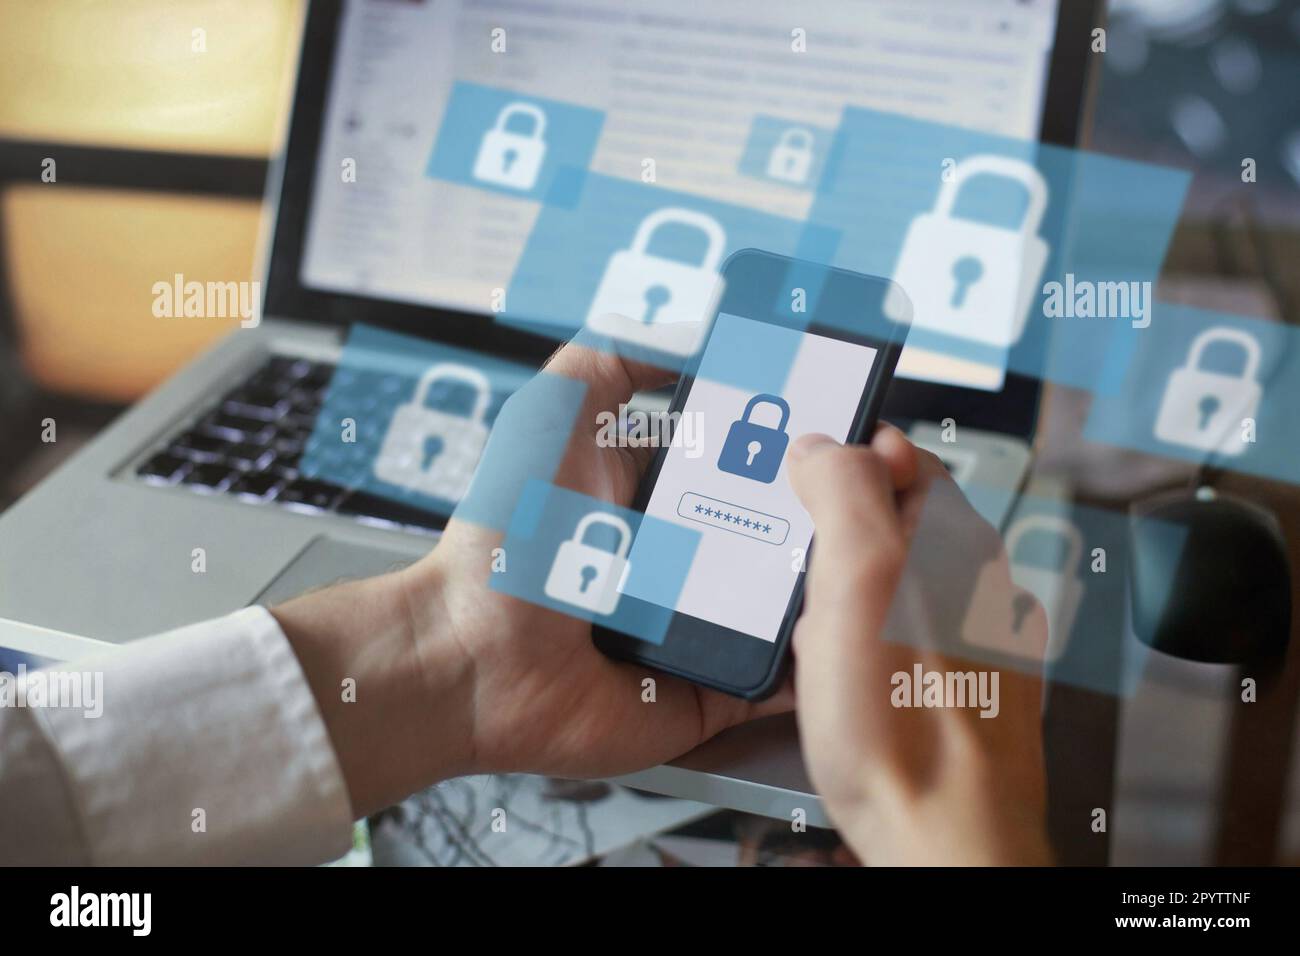 digitare la password per accedere all'account online sul sito web su internet, concetto di cyber sicurezza Foto Stock